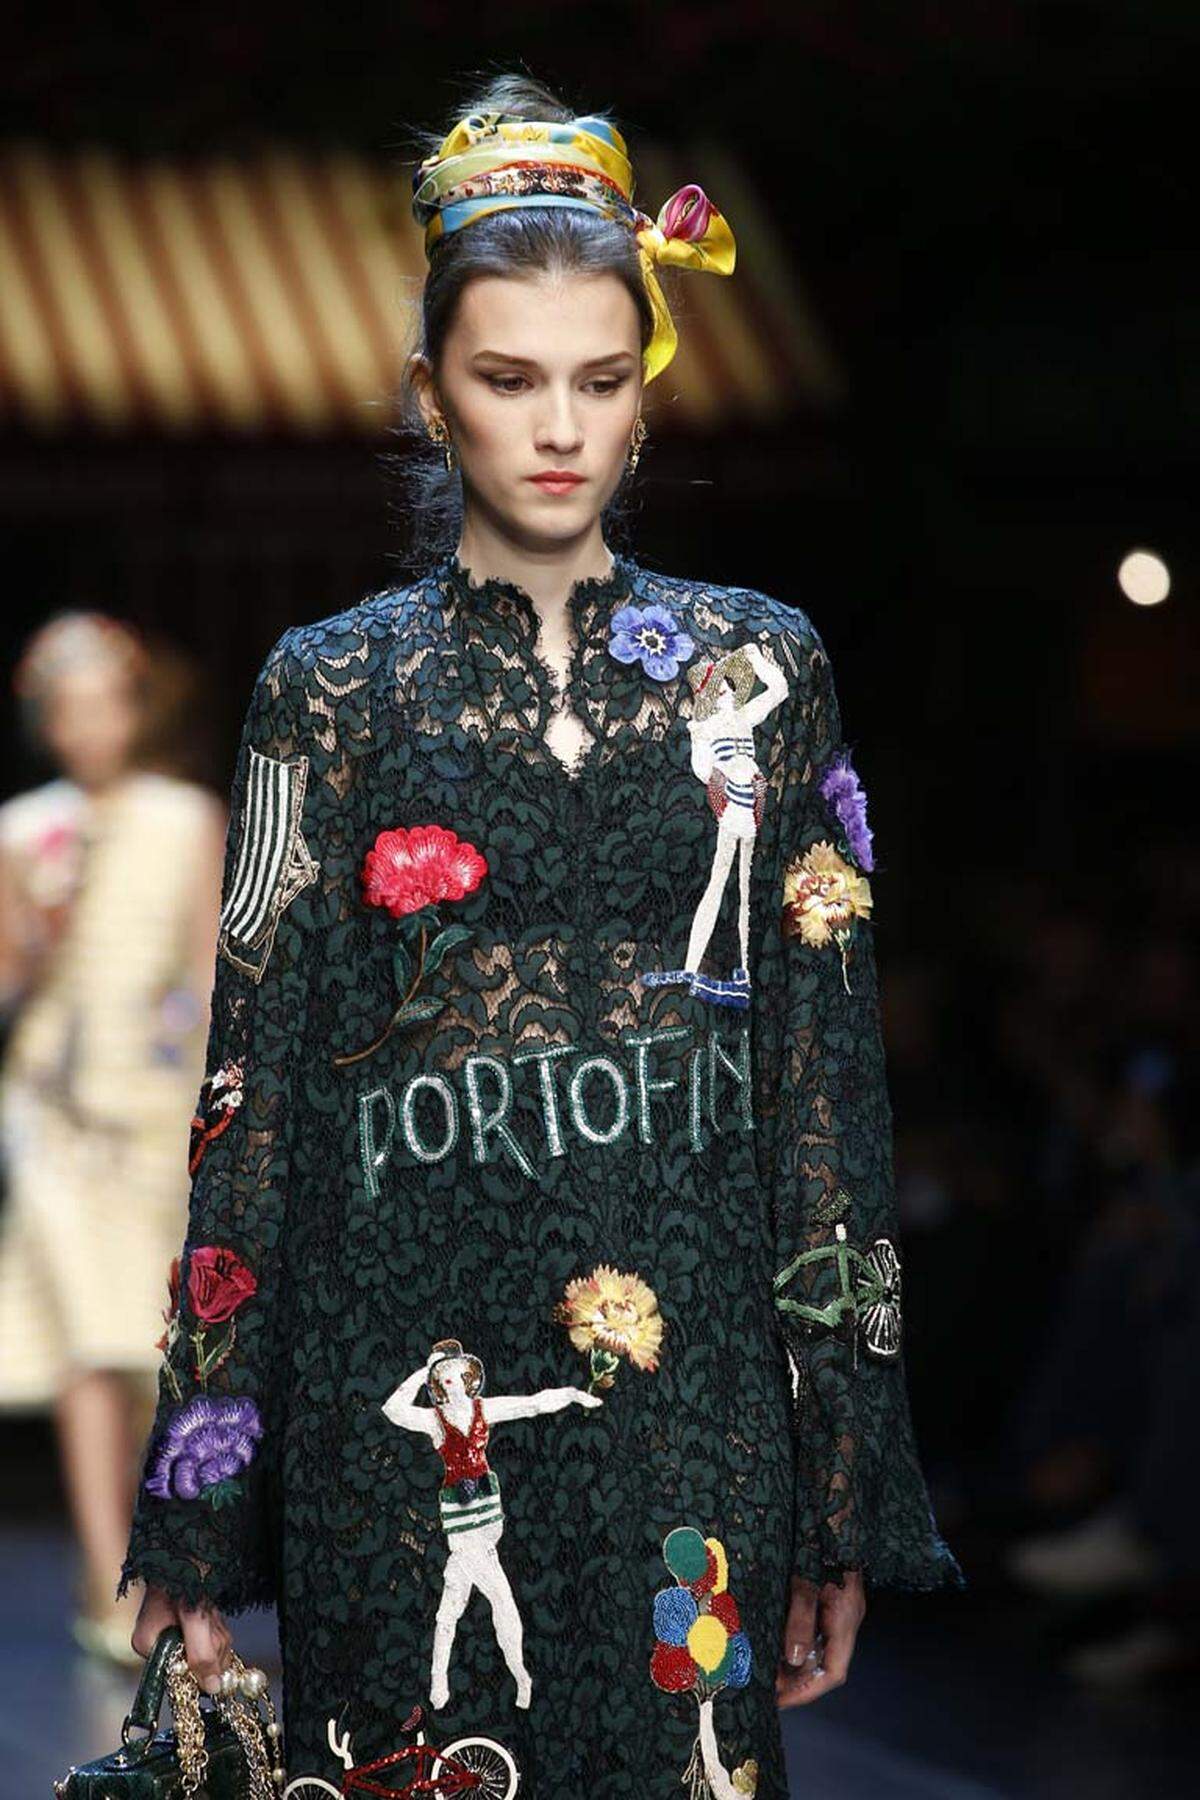 Duttfrisuren erhielten bei Dolce &amp; Gabbana mit Tüchern ein Update.